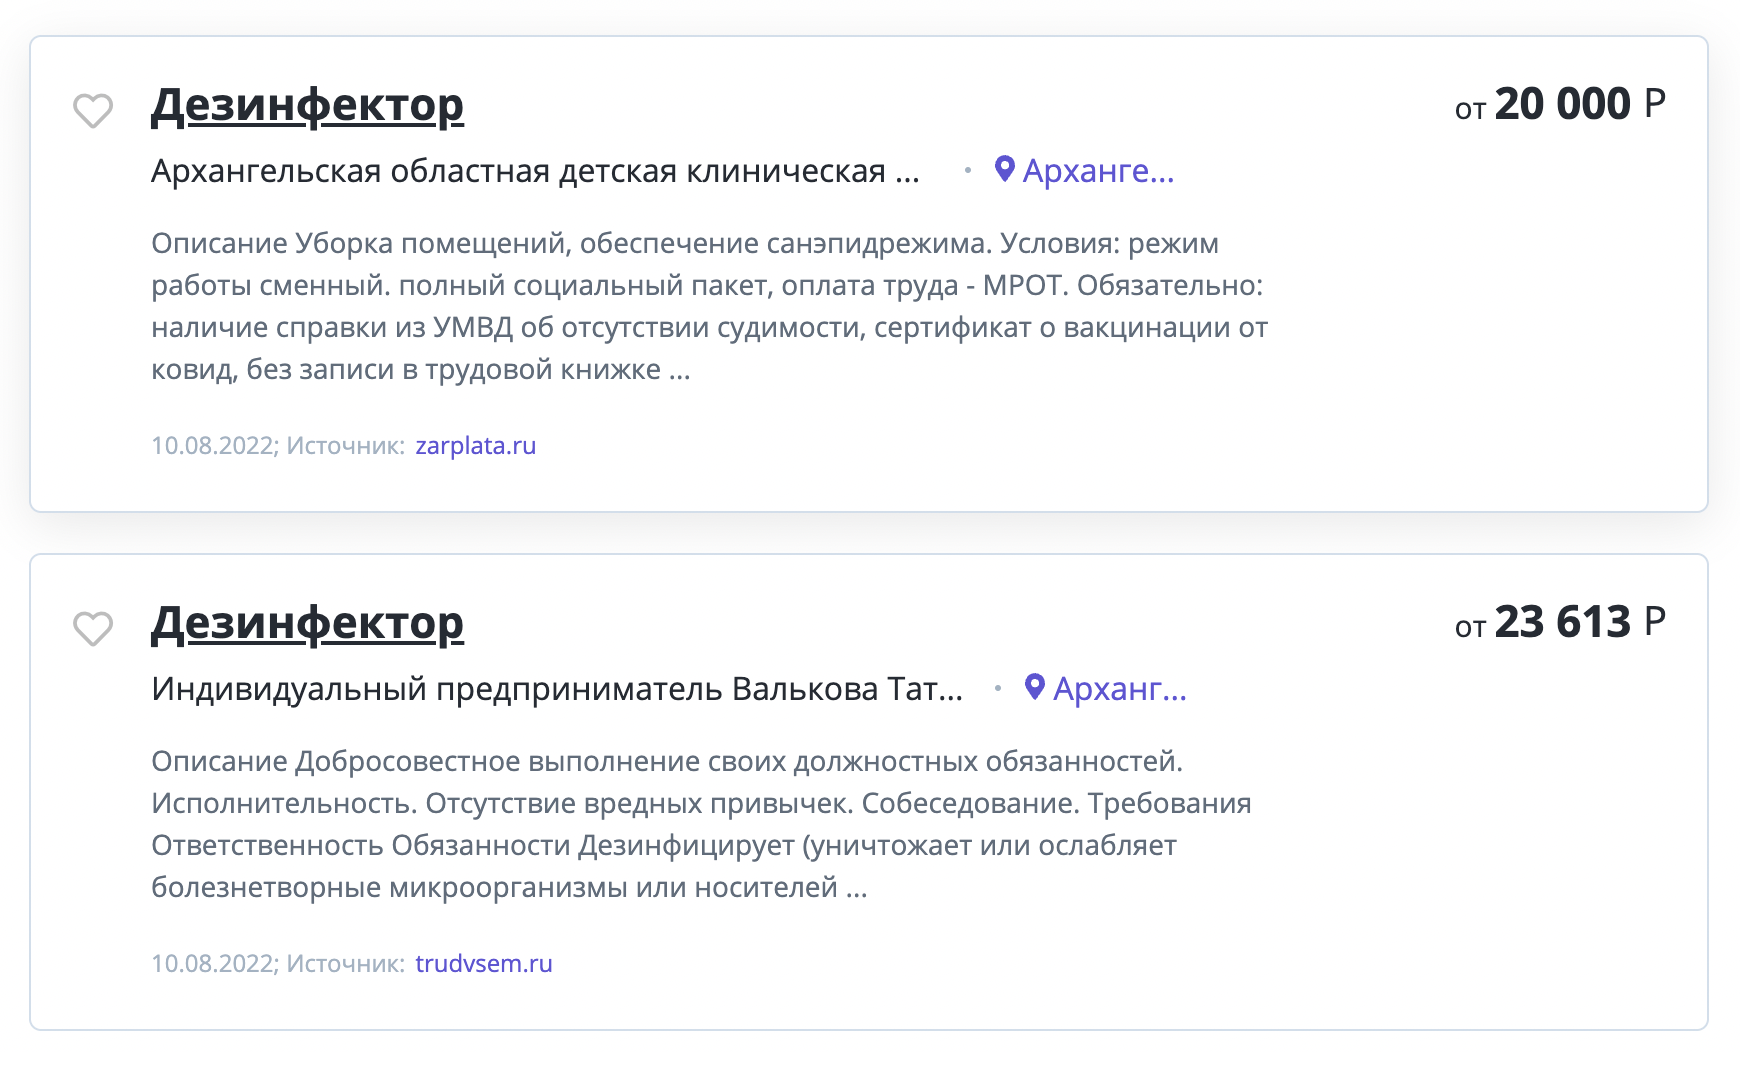 В июне 2022 года ситуация особо не изменилась, дезинфекторам в Архангельске предлагают за работу не больше 25 000 ₽. Источник: rabota1000.ru